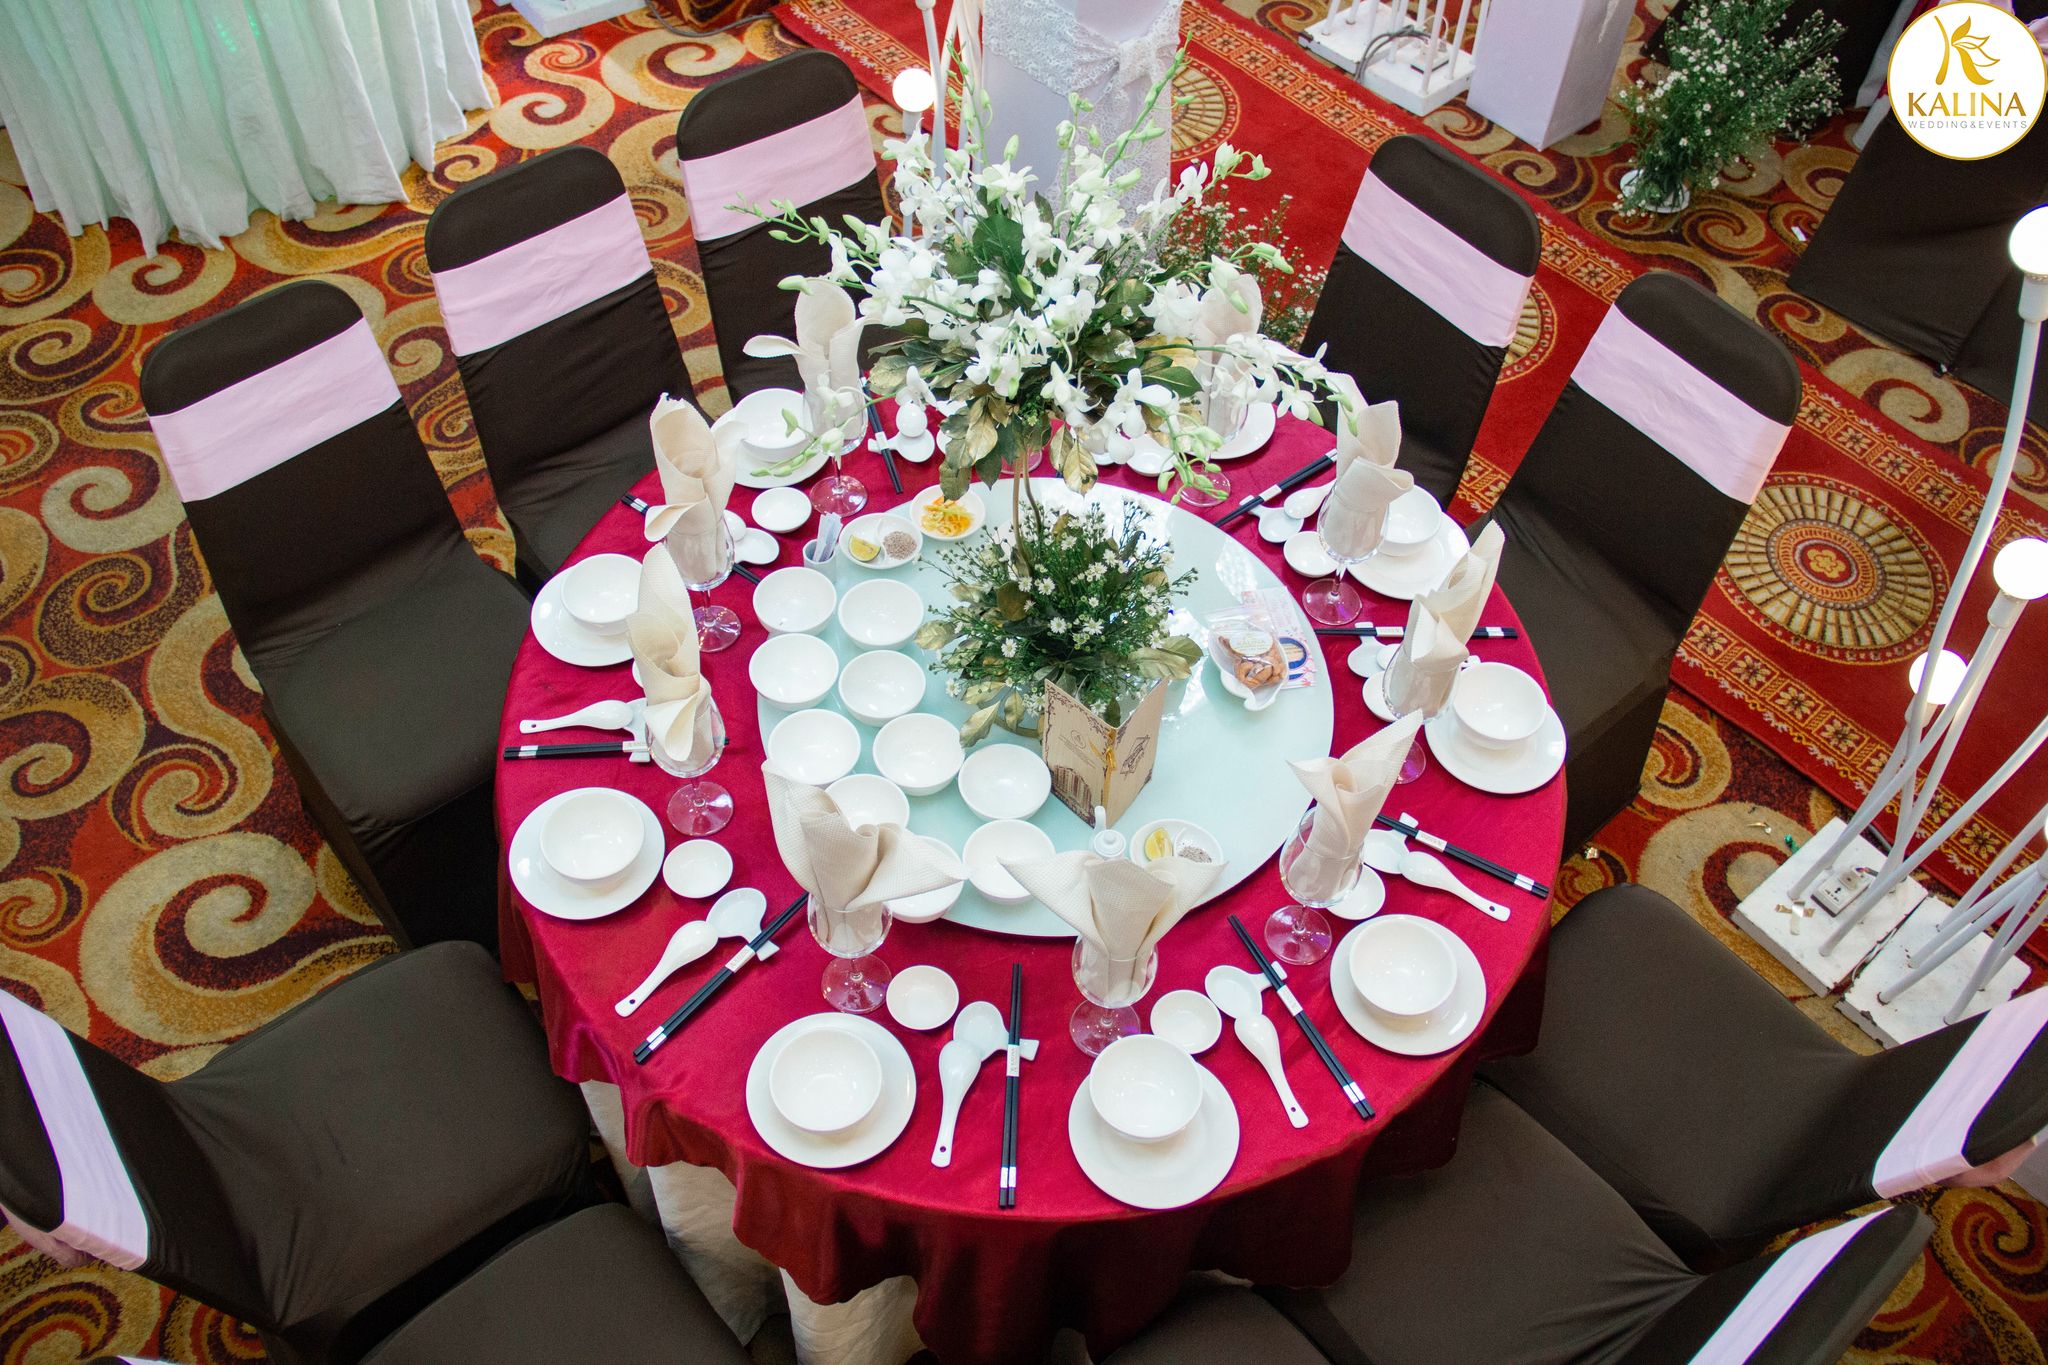 gói trang trí tiệc cưới nhà hàng Kalina Tân Phú